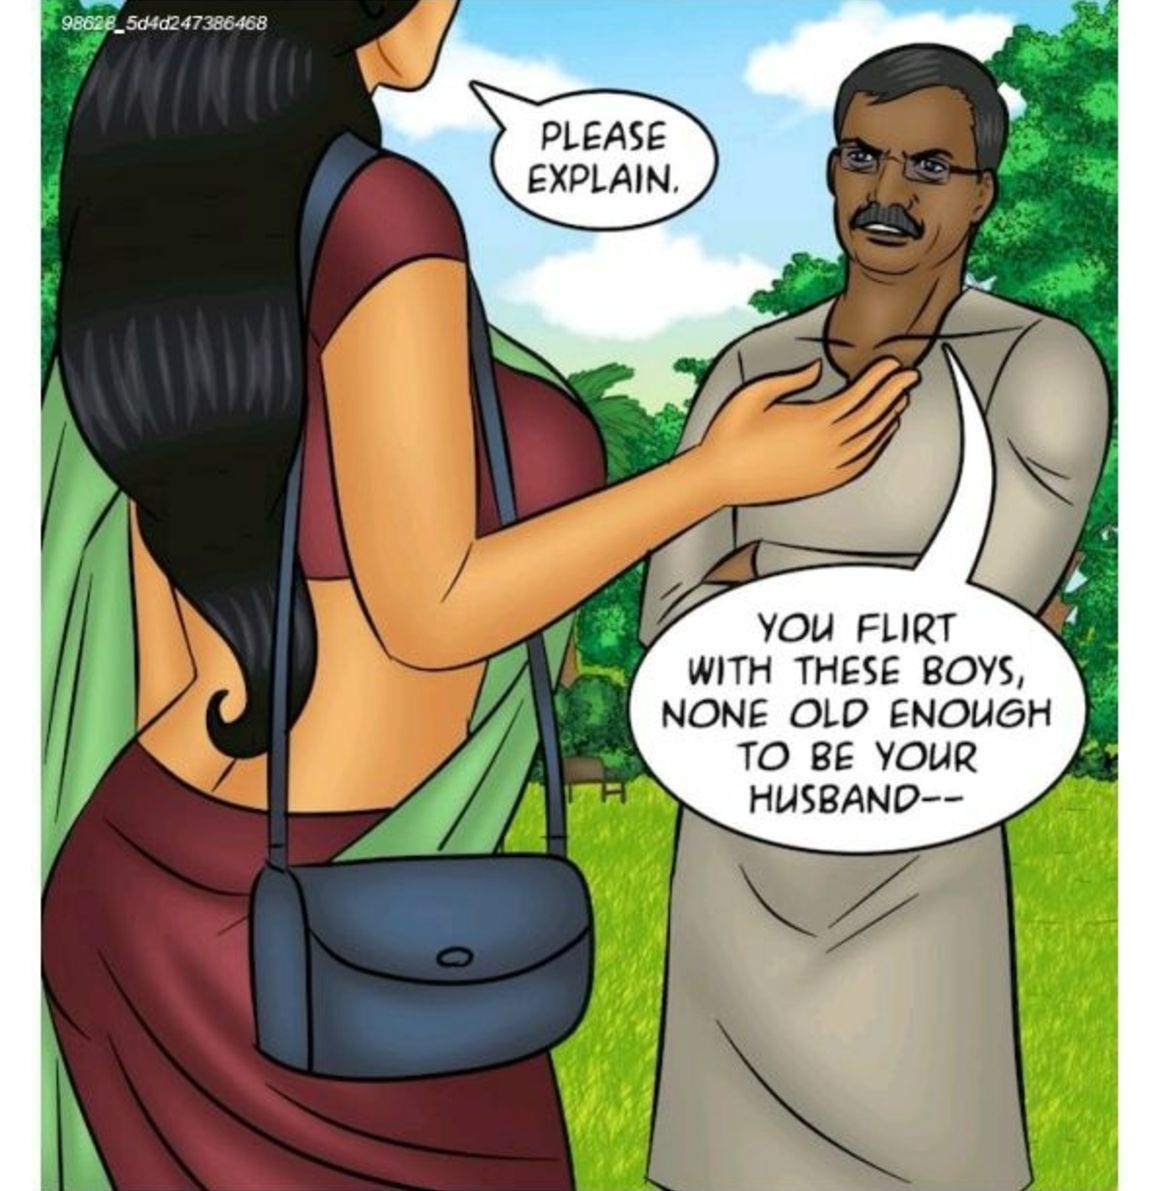 Savita Bhabhi 102 Slut Shaming (Kirtu) page 20